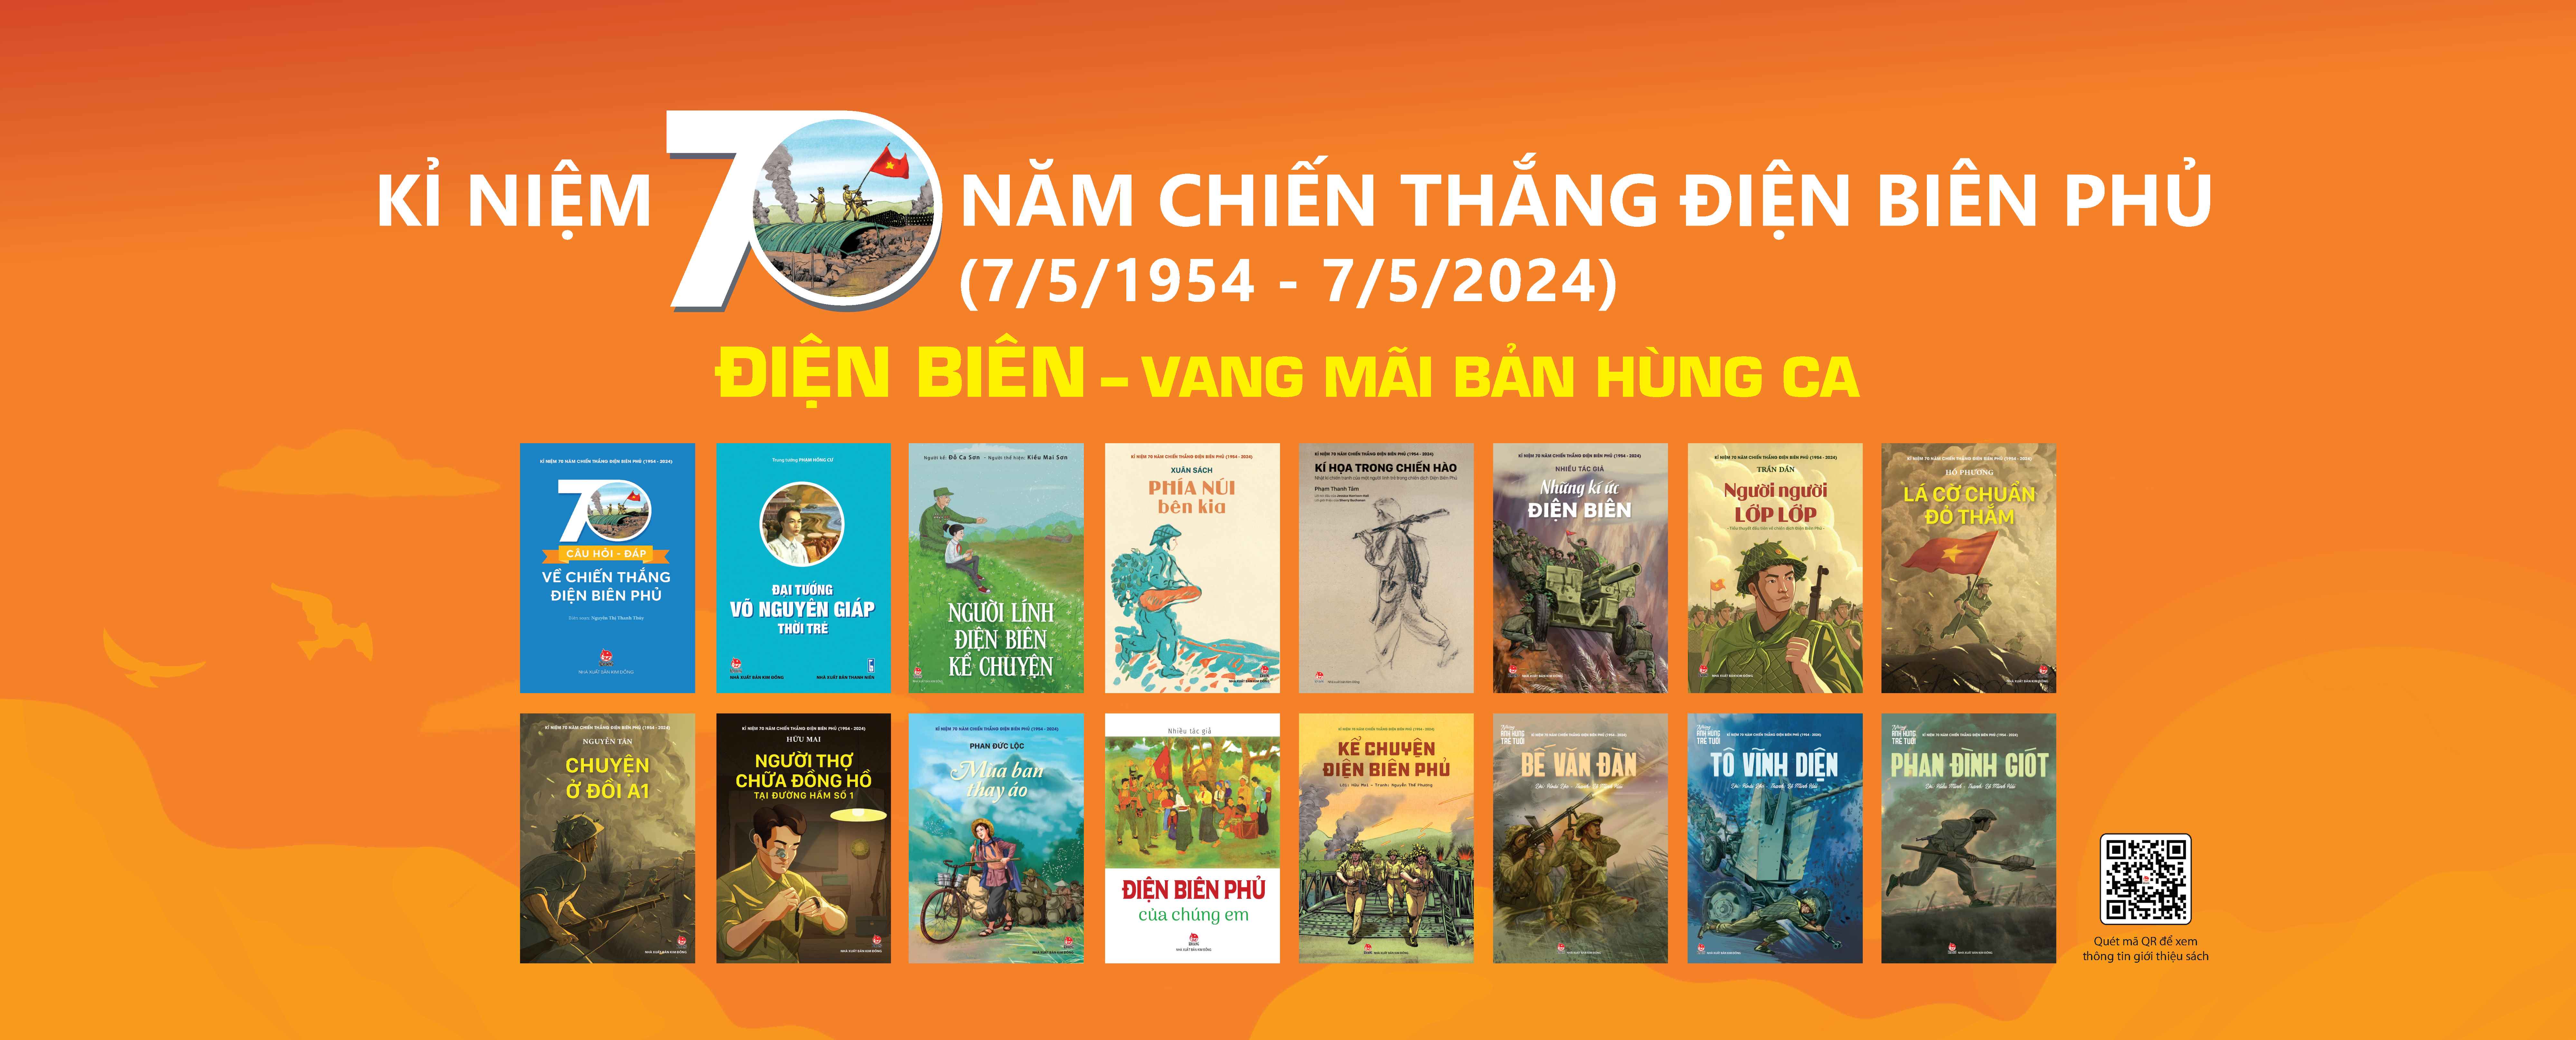 Kỉ niệm 70 năm chiến thắng Điện Biên Phủ